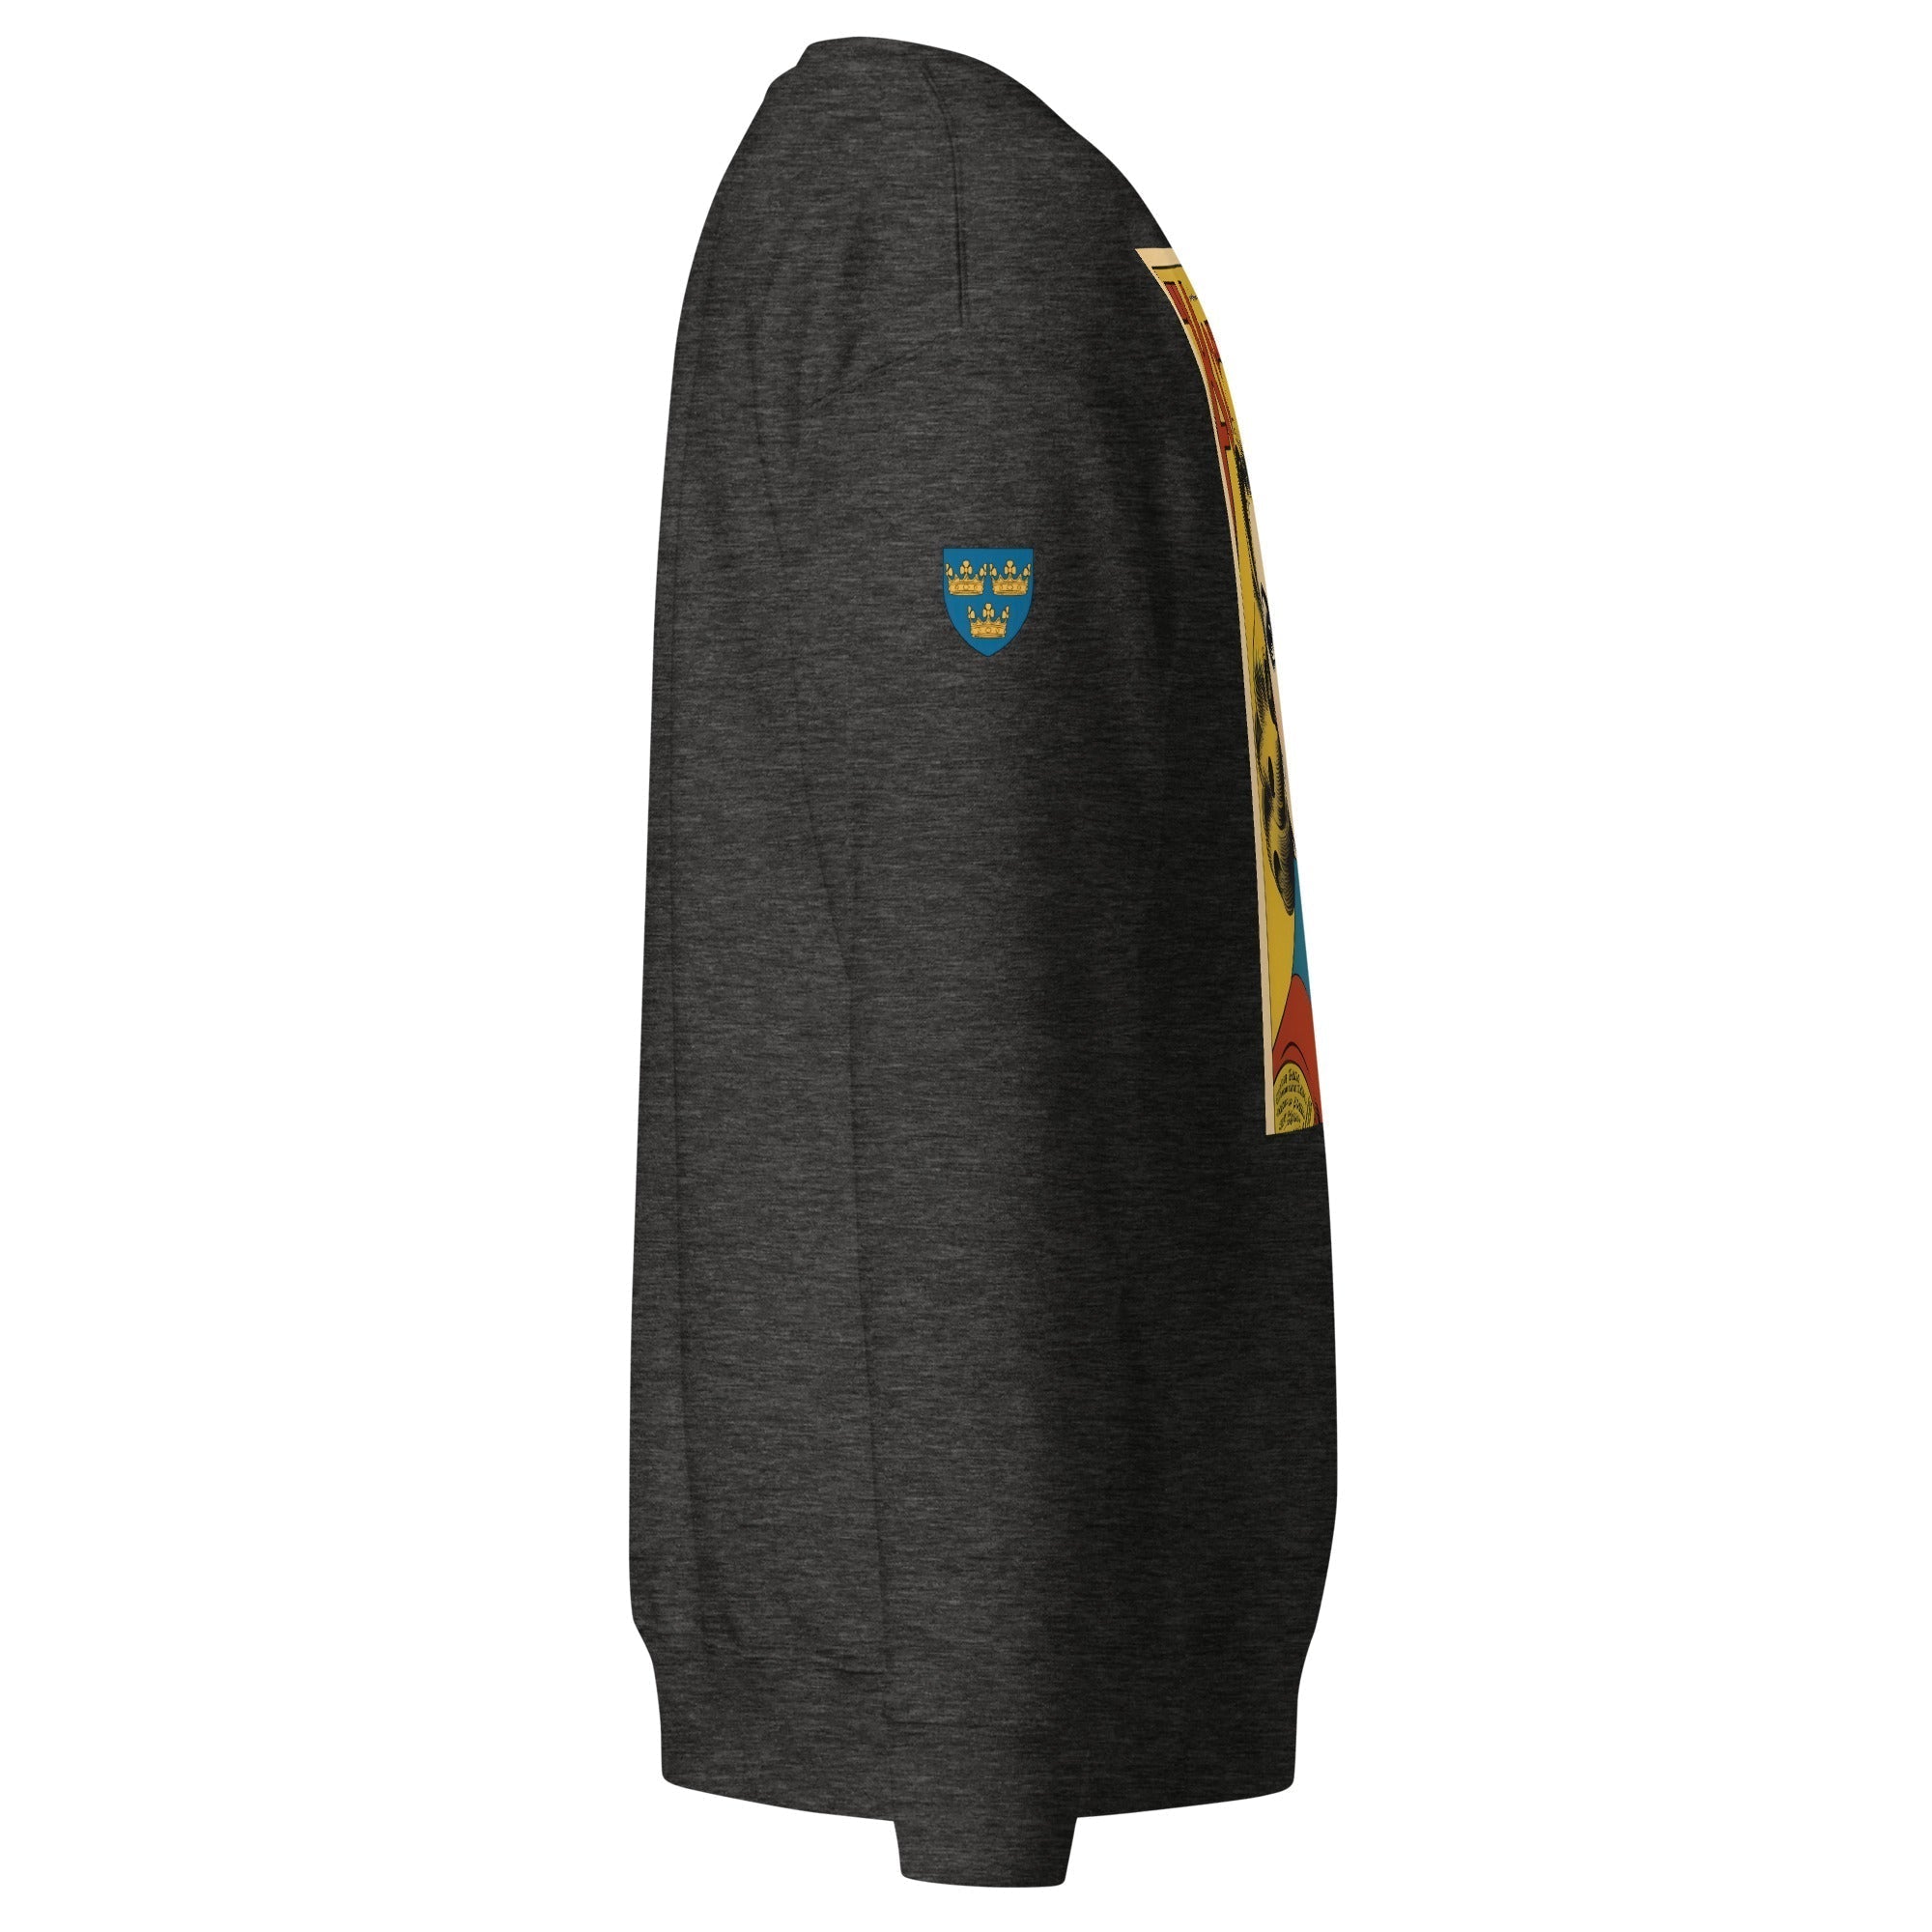 Unisex Premium Sweatshirt - Swedish Vintage Fashion Series v.17 - GRAPHIC T-SHIRTS